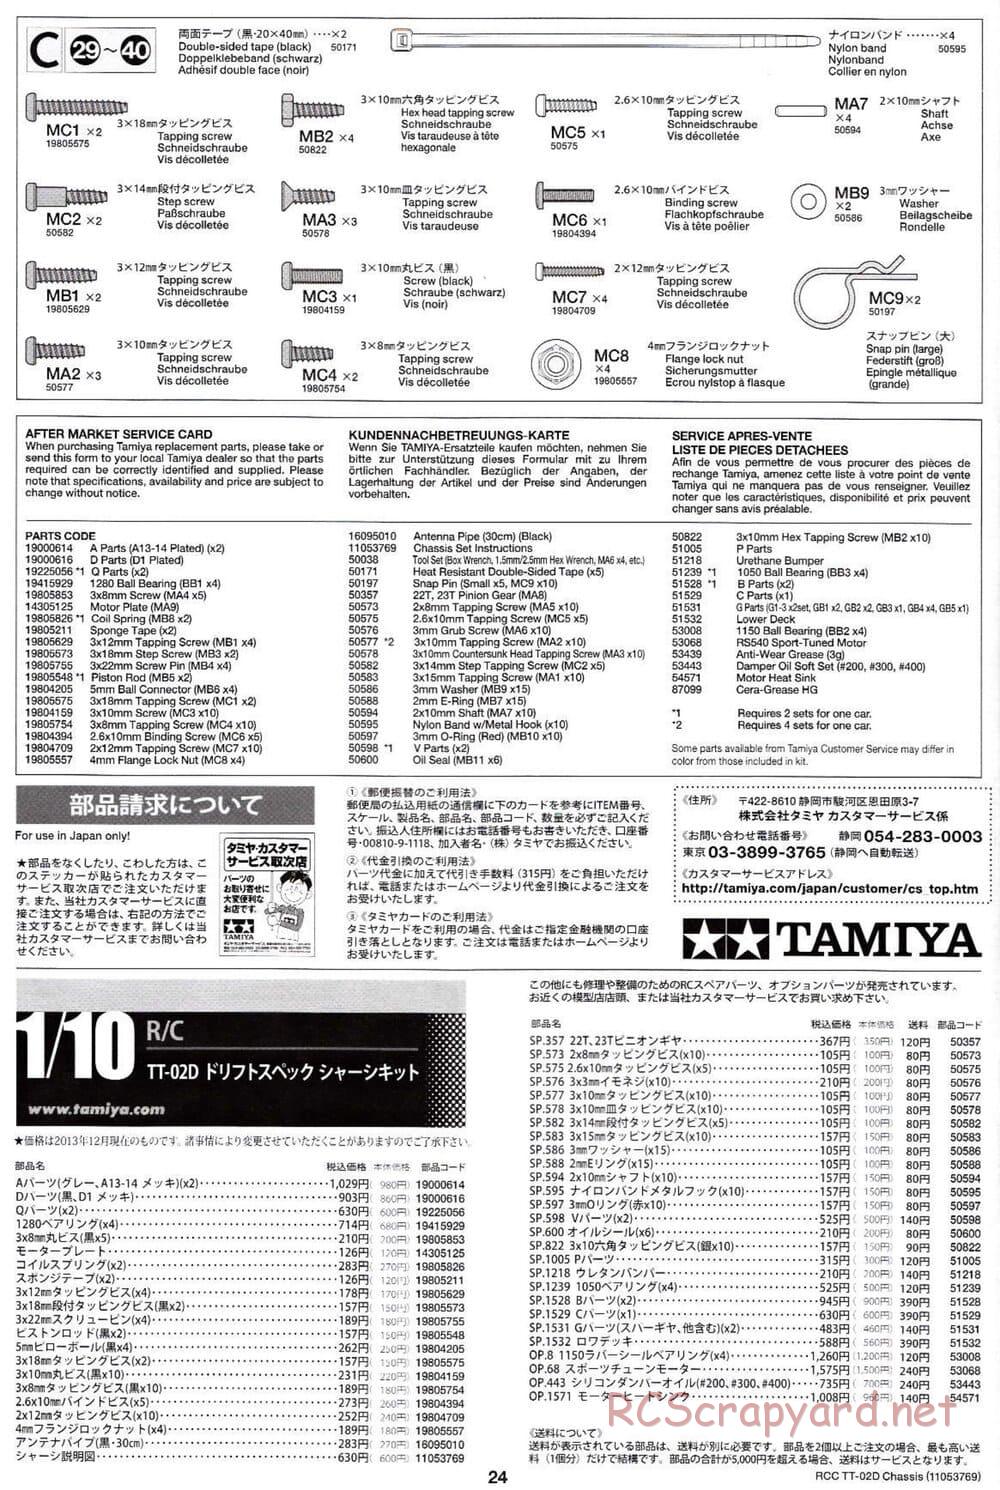 Tamiya - TT-02D Chassis - Manual - Page 24